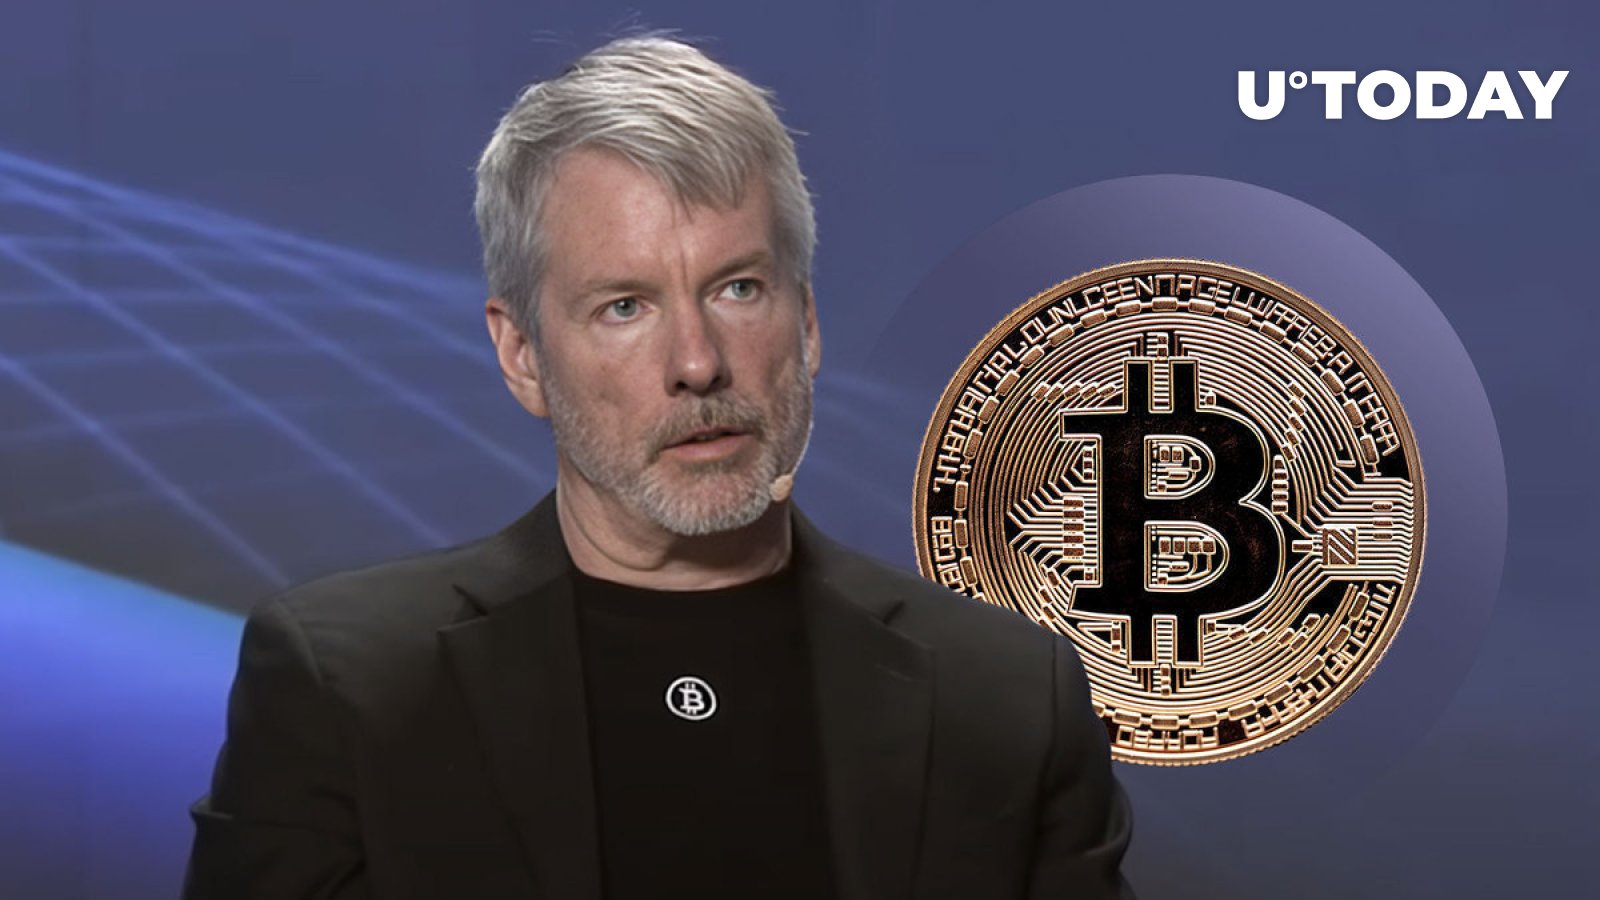 Le Bitcoin dépasse les monnaies fiduciaires, affirme Michael Saylor